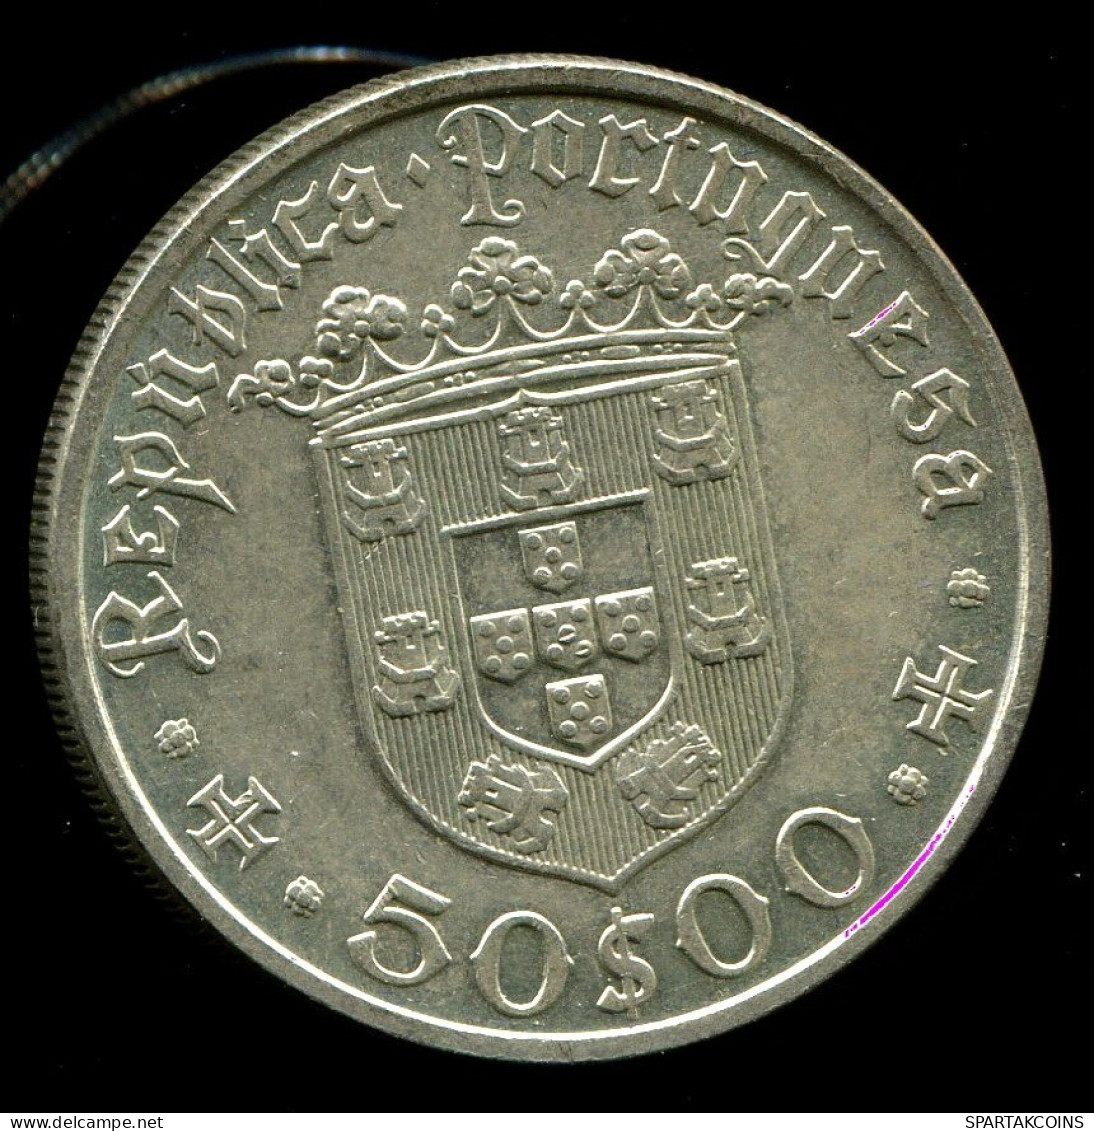 50 ESCUDOS 1968 PORTUGAL SILBER Münze #W10386.27.D.A - Portugal